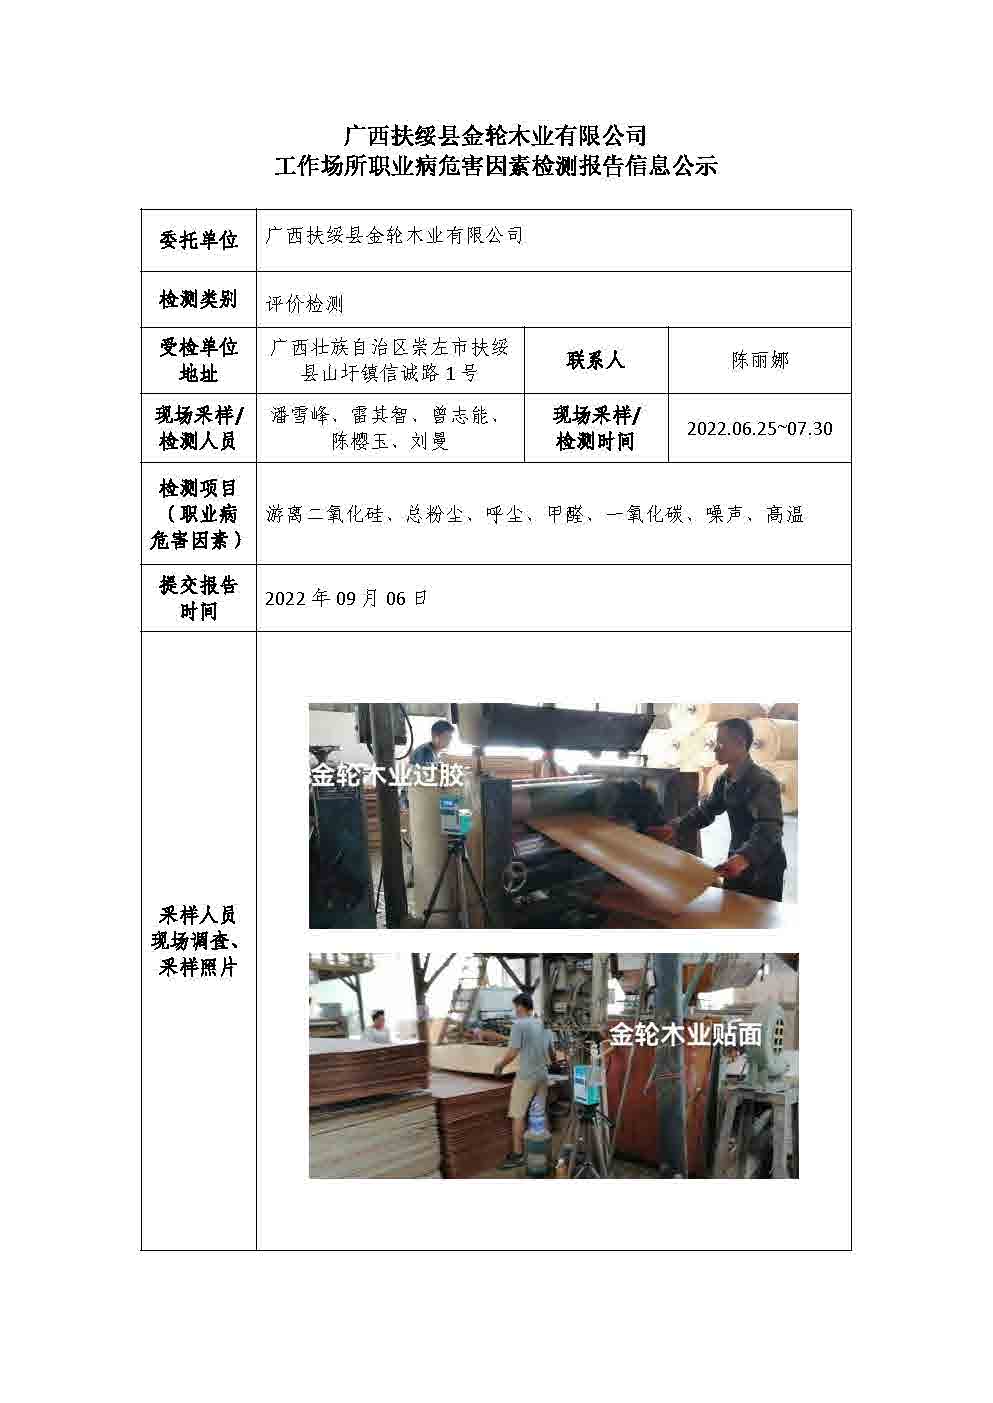 广西扶绥县金轮木业有限公司工作场所职业病危害因素检测报告信息公示